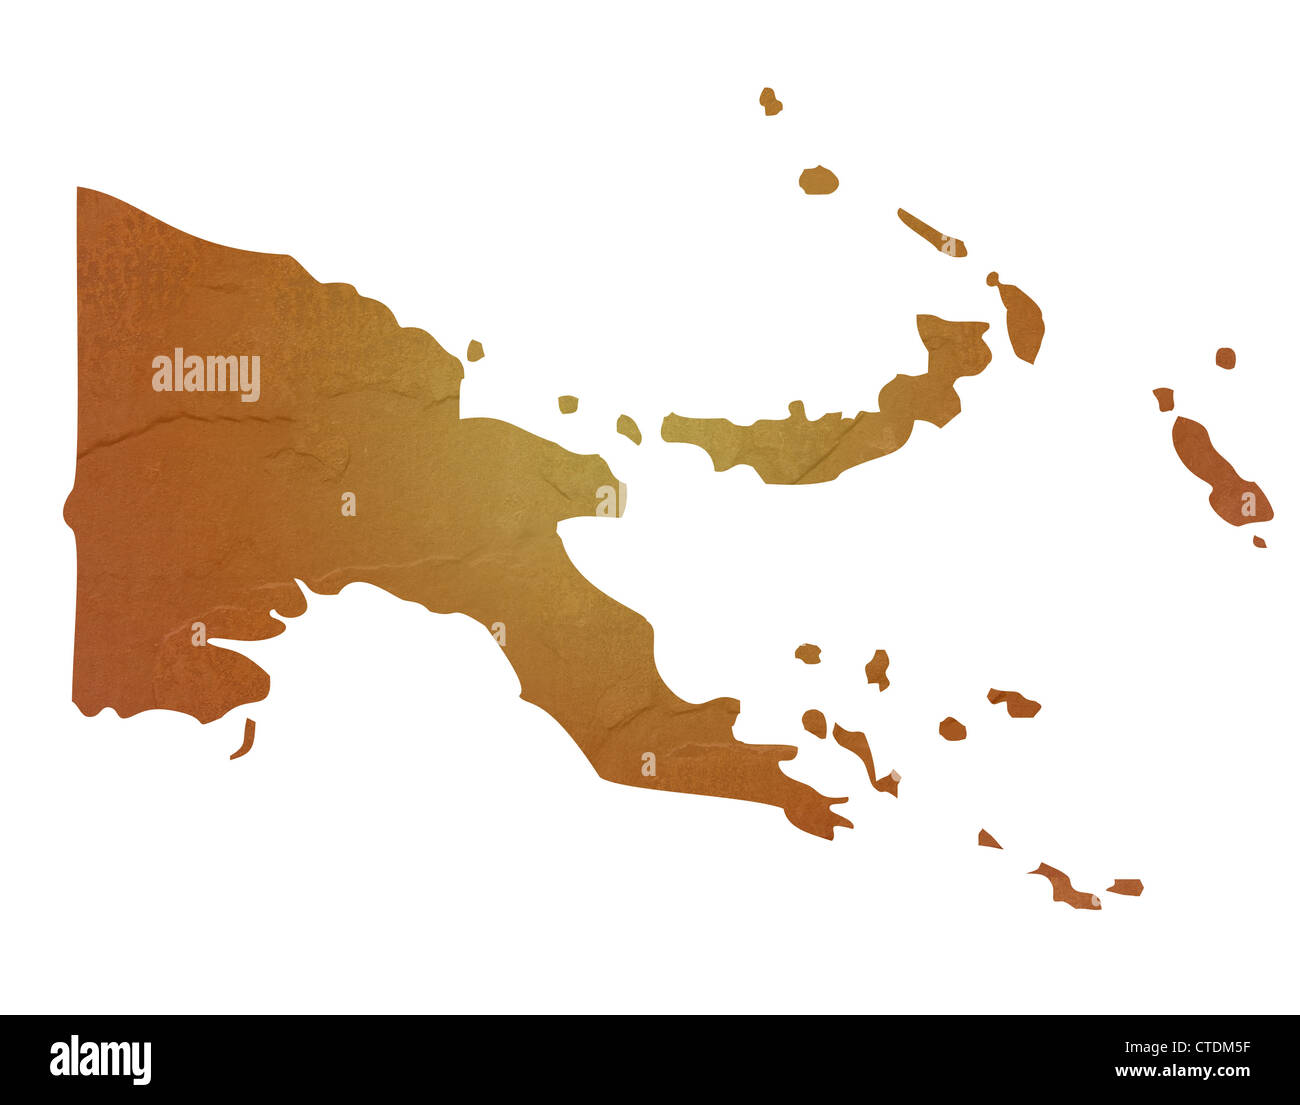 Papa-Neuguinea Karte mit braunen Felsen oder Stein Textur, isoliert auf weißem Hintergrund mit Beschneidungspfad. Stockfoto